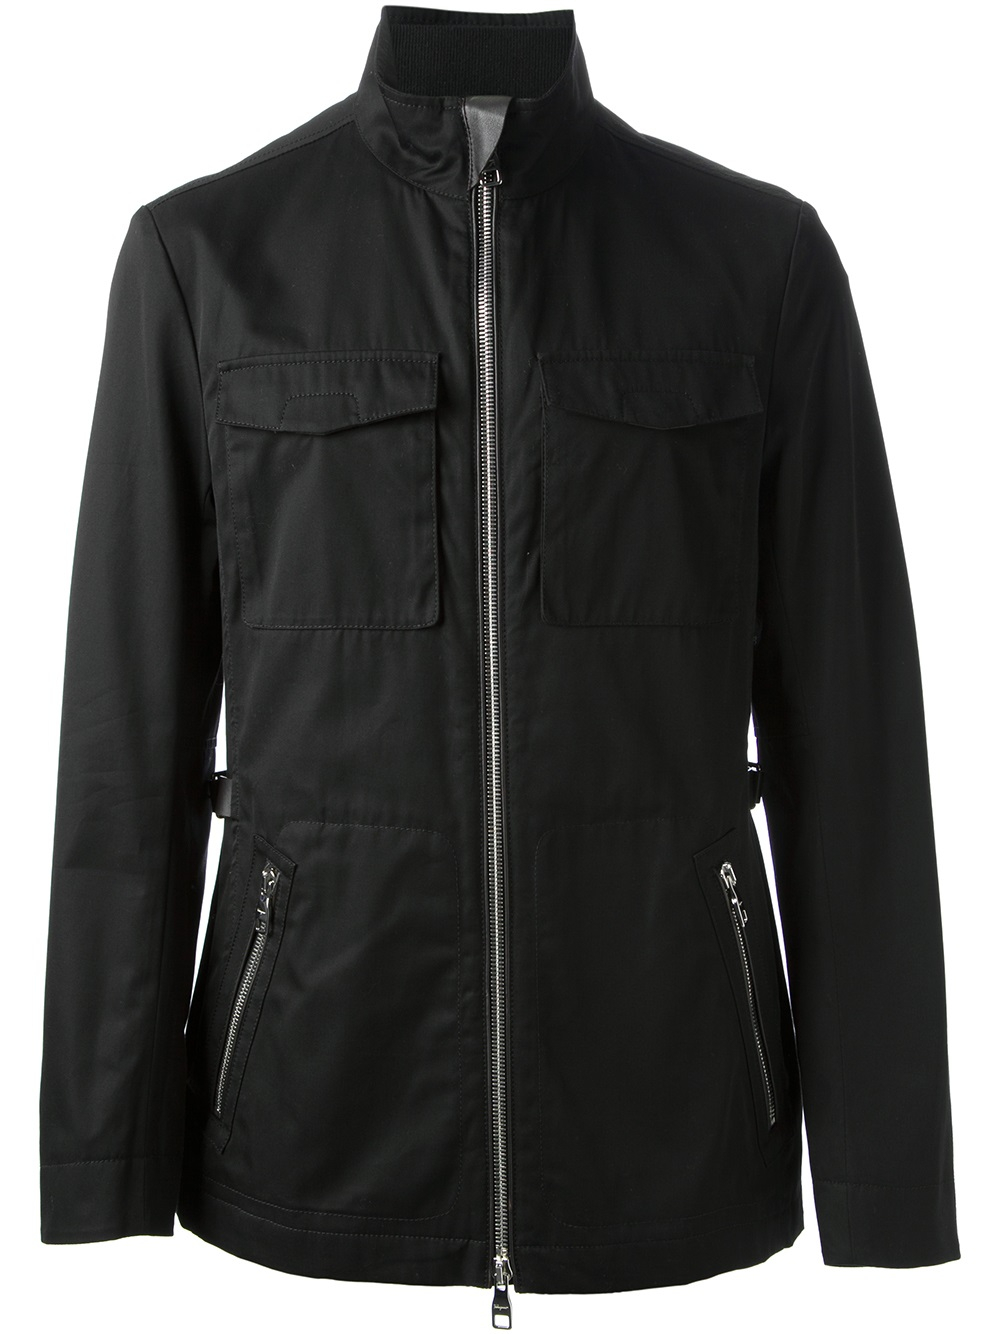 Lyst - Ferragamo Buckle Strap Jacket in Black for Men